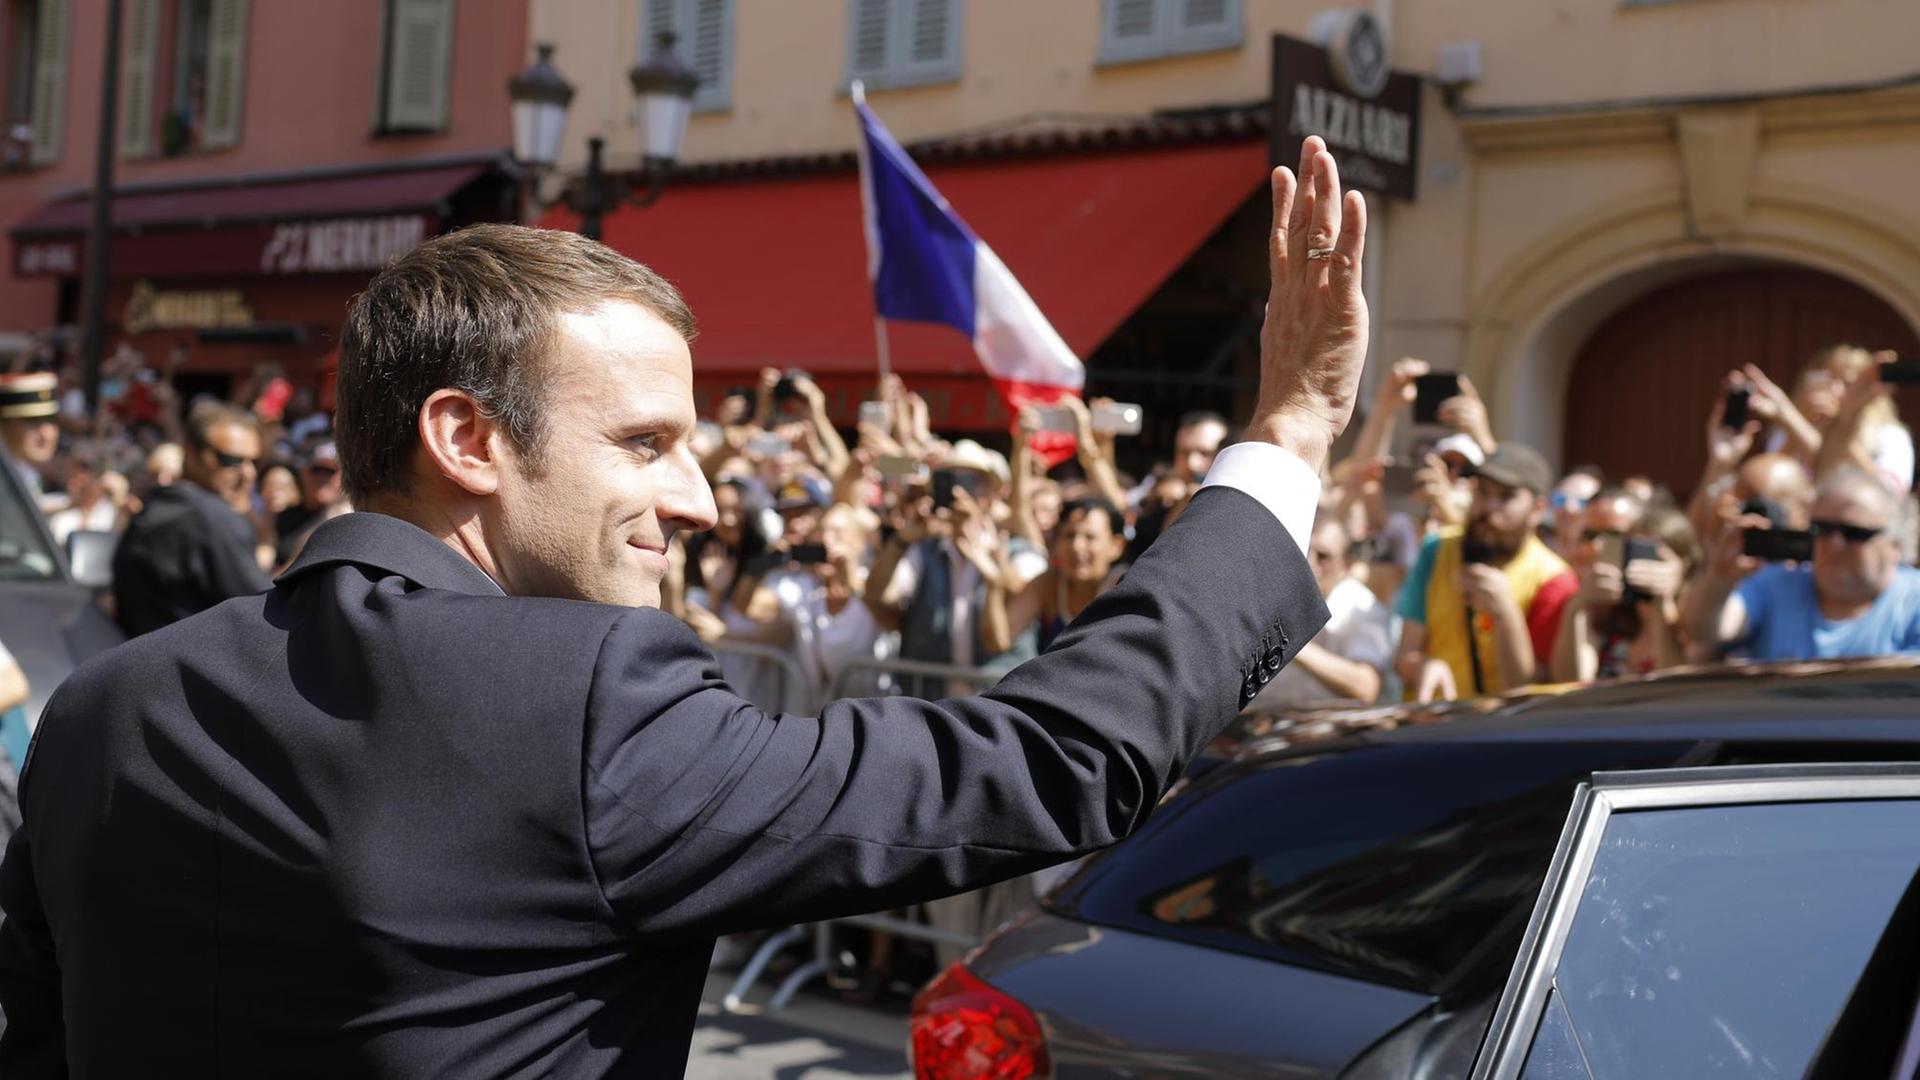 Der französische Präsident Emmanuel Macron winkt der Menge bei seiner Ankunft in Nizza/Südfrankreich zu. Er besucht den Ort anlässlich des 1. Jahrestages des Massakers, bei dem damals 86 Menschen getötet worden waren.